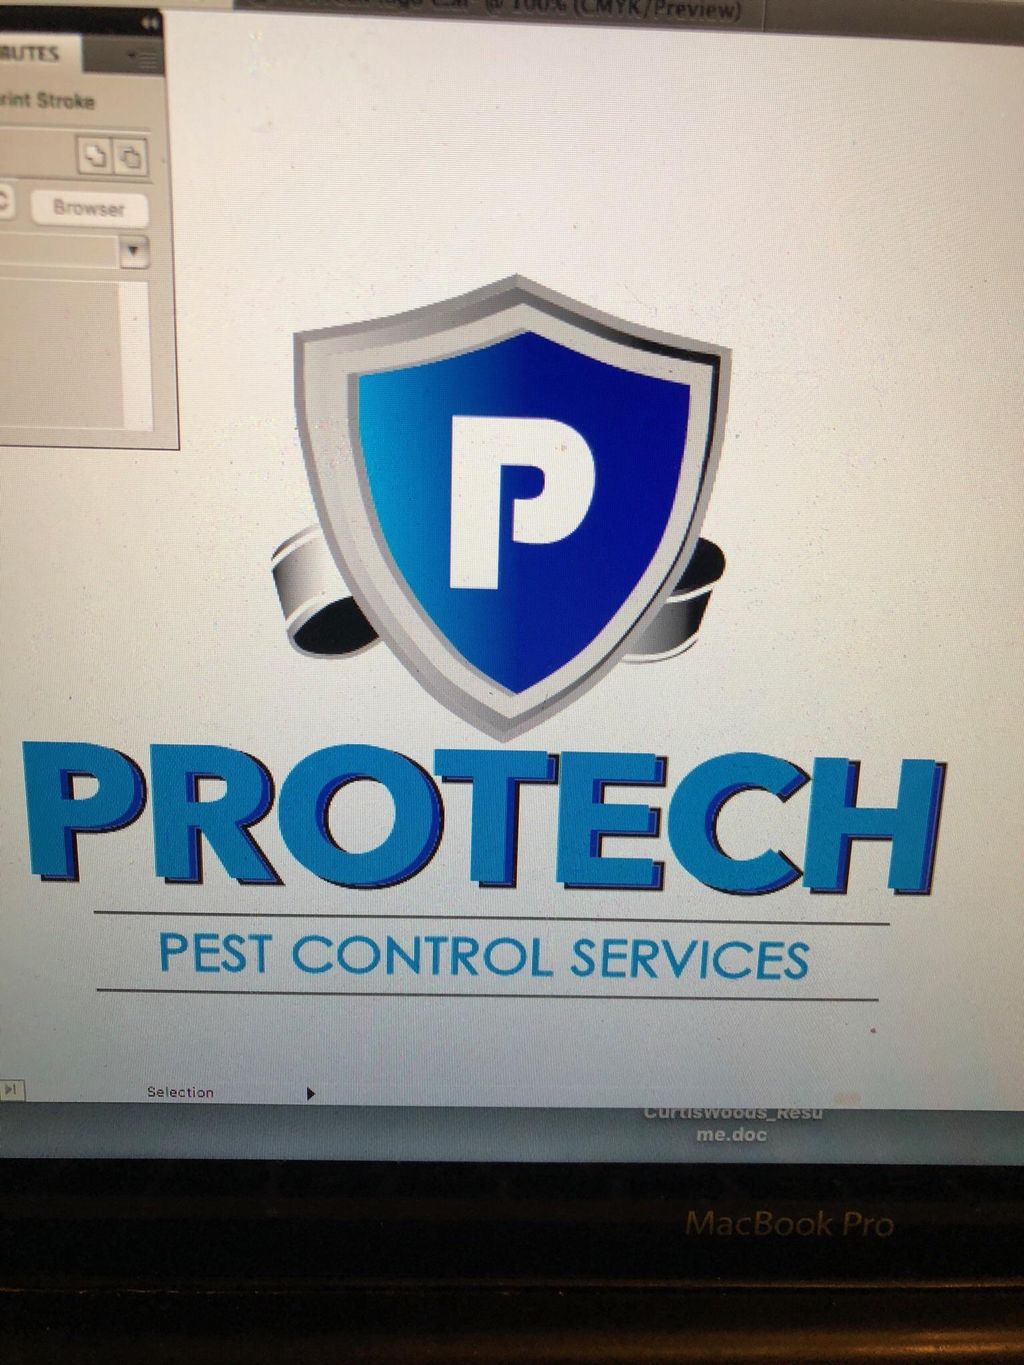 Pro-Tech Pest Control Services